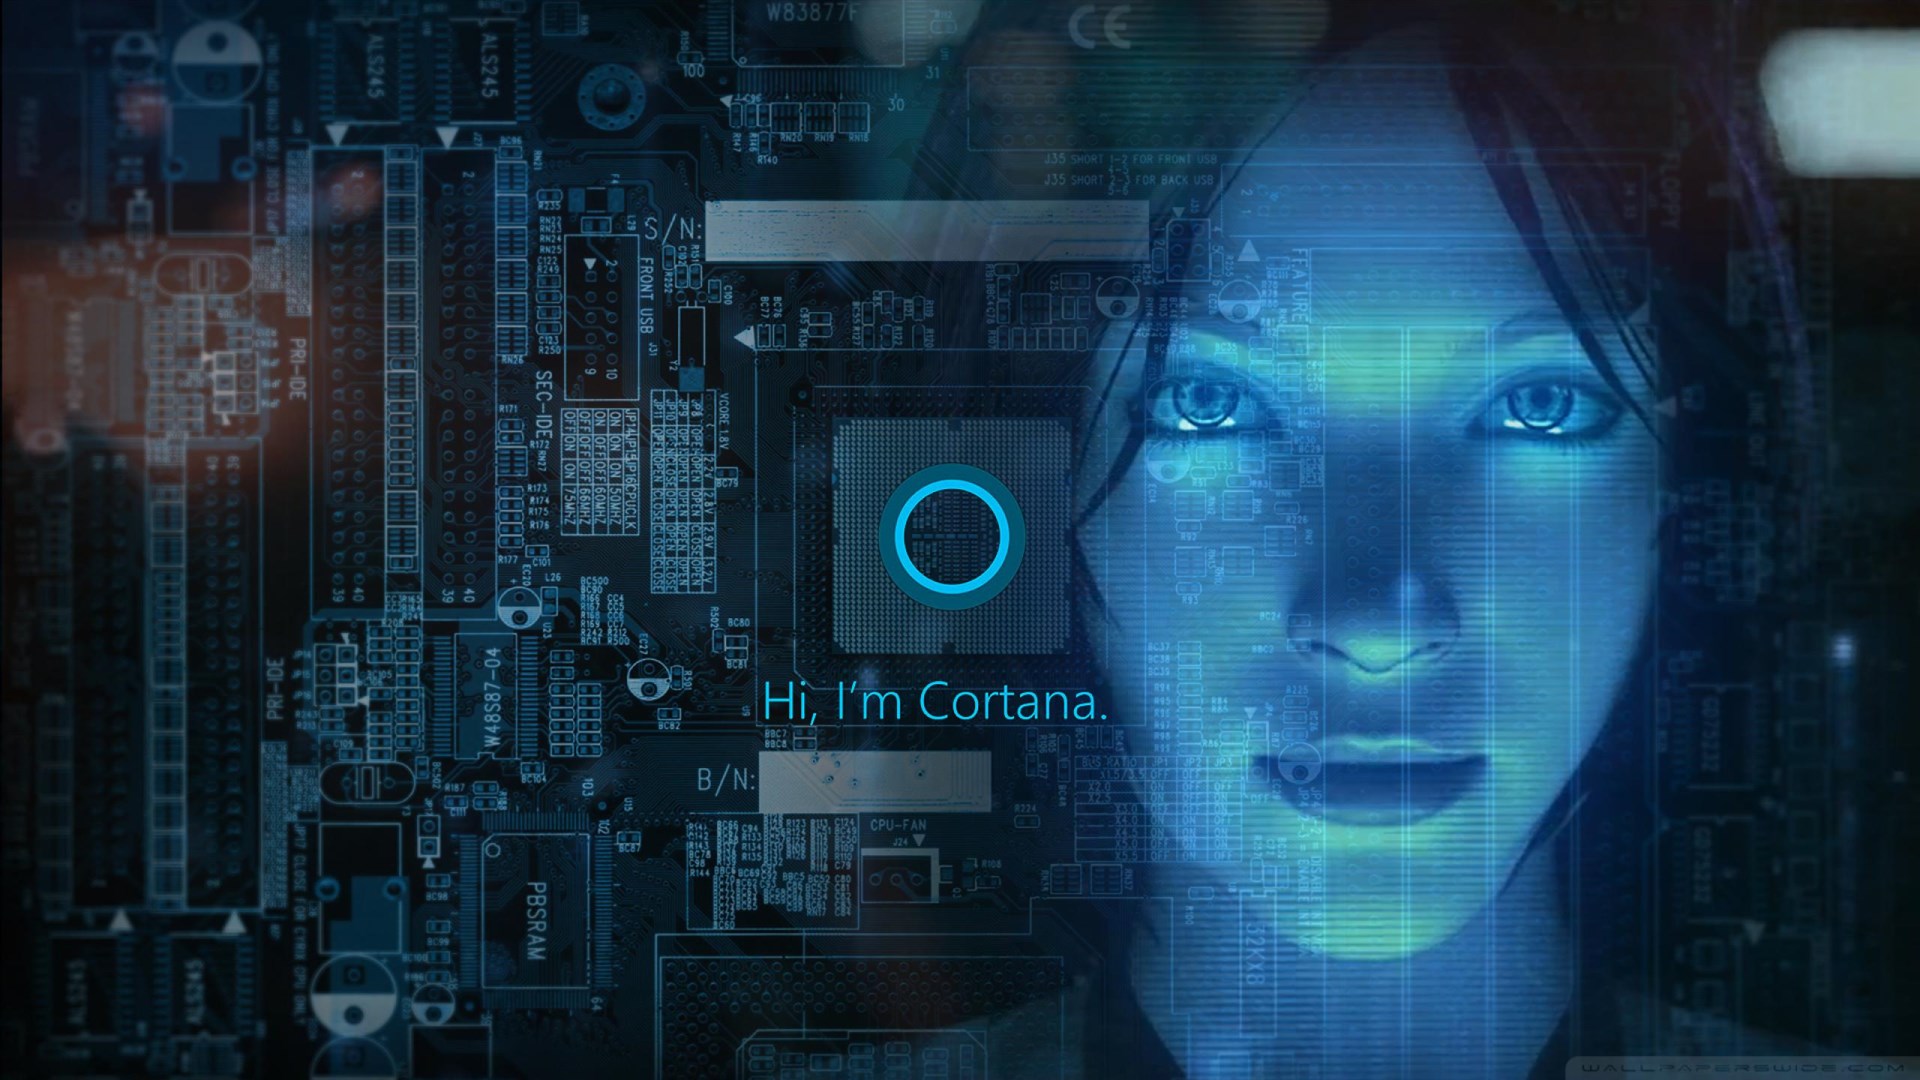 图片展示了一个数字化的女性形象，代表Cortana人工智能，背景是电路板和代码，体现高科技和人工智能主题。